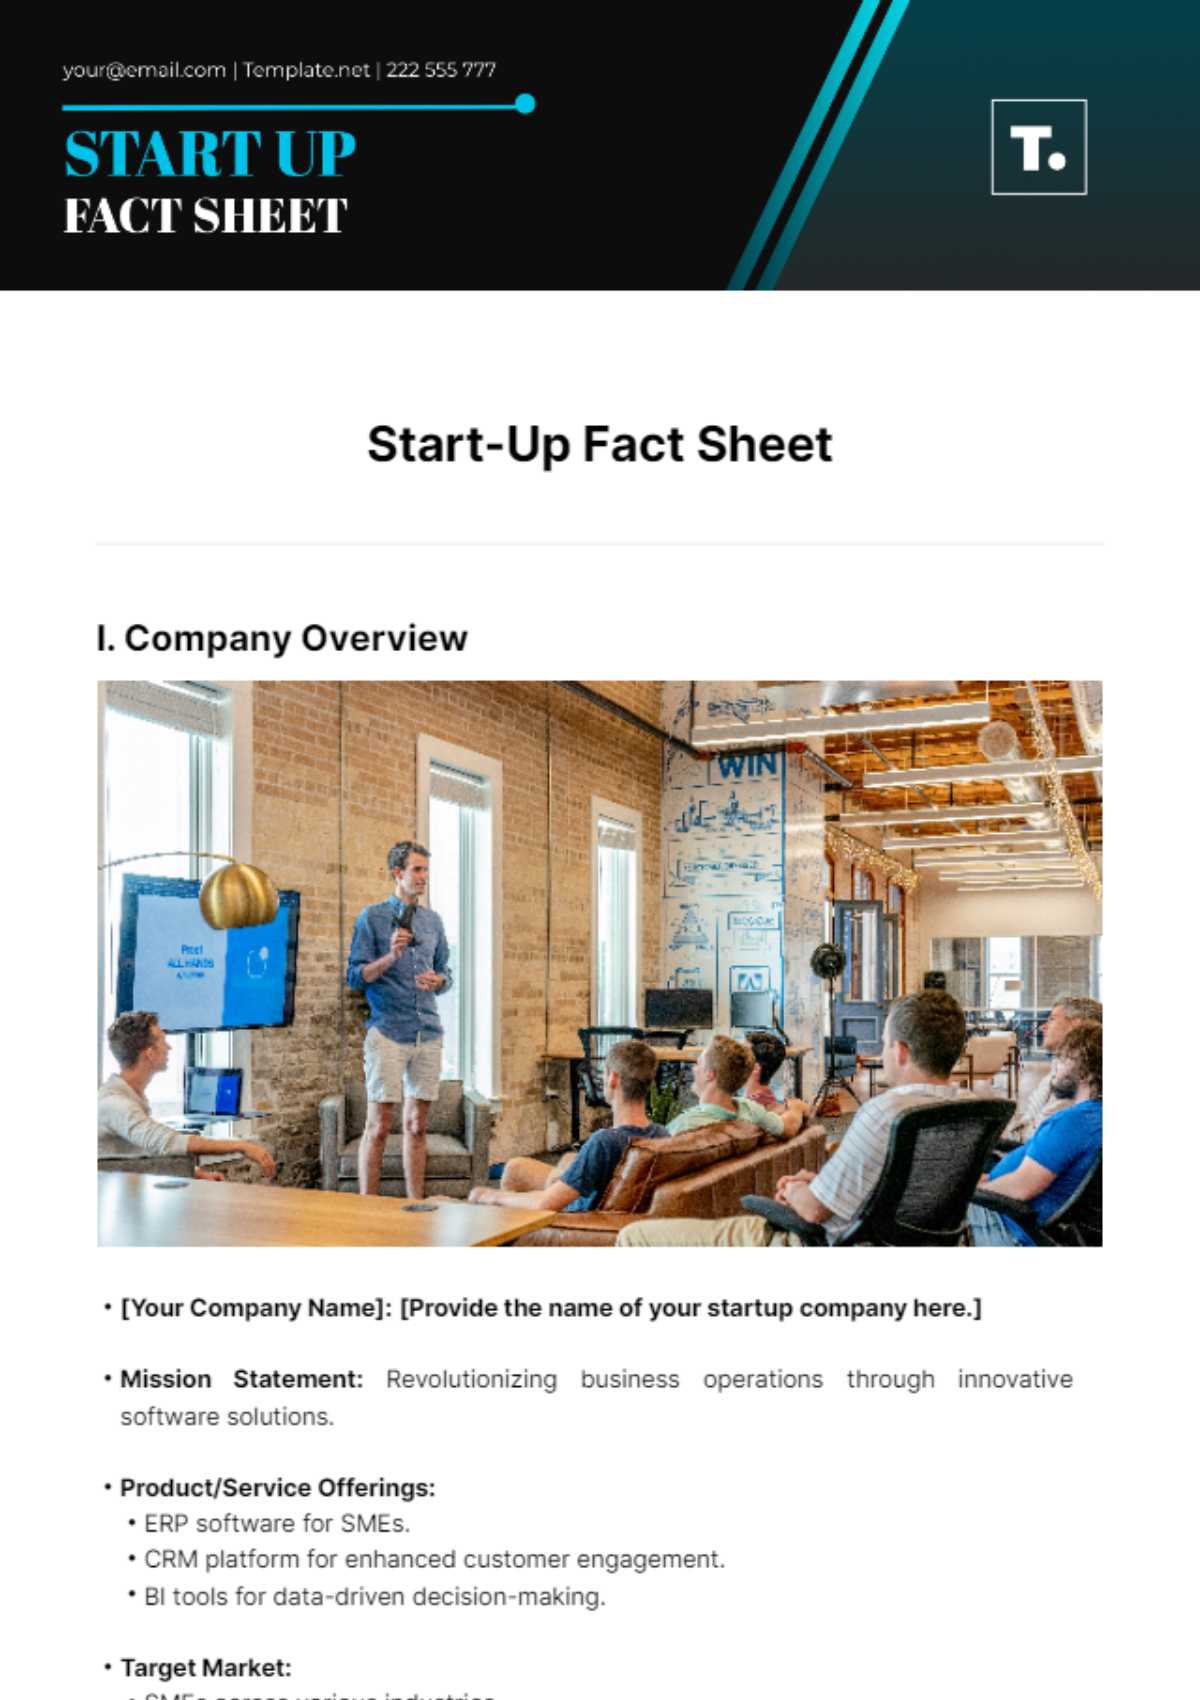 Start-Up Fact Sheet Template